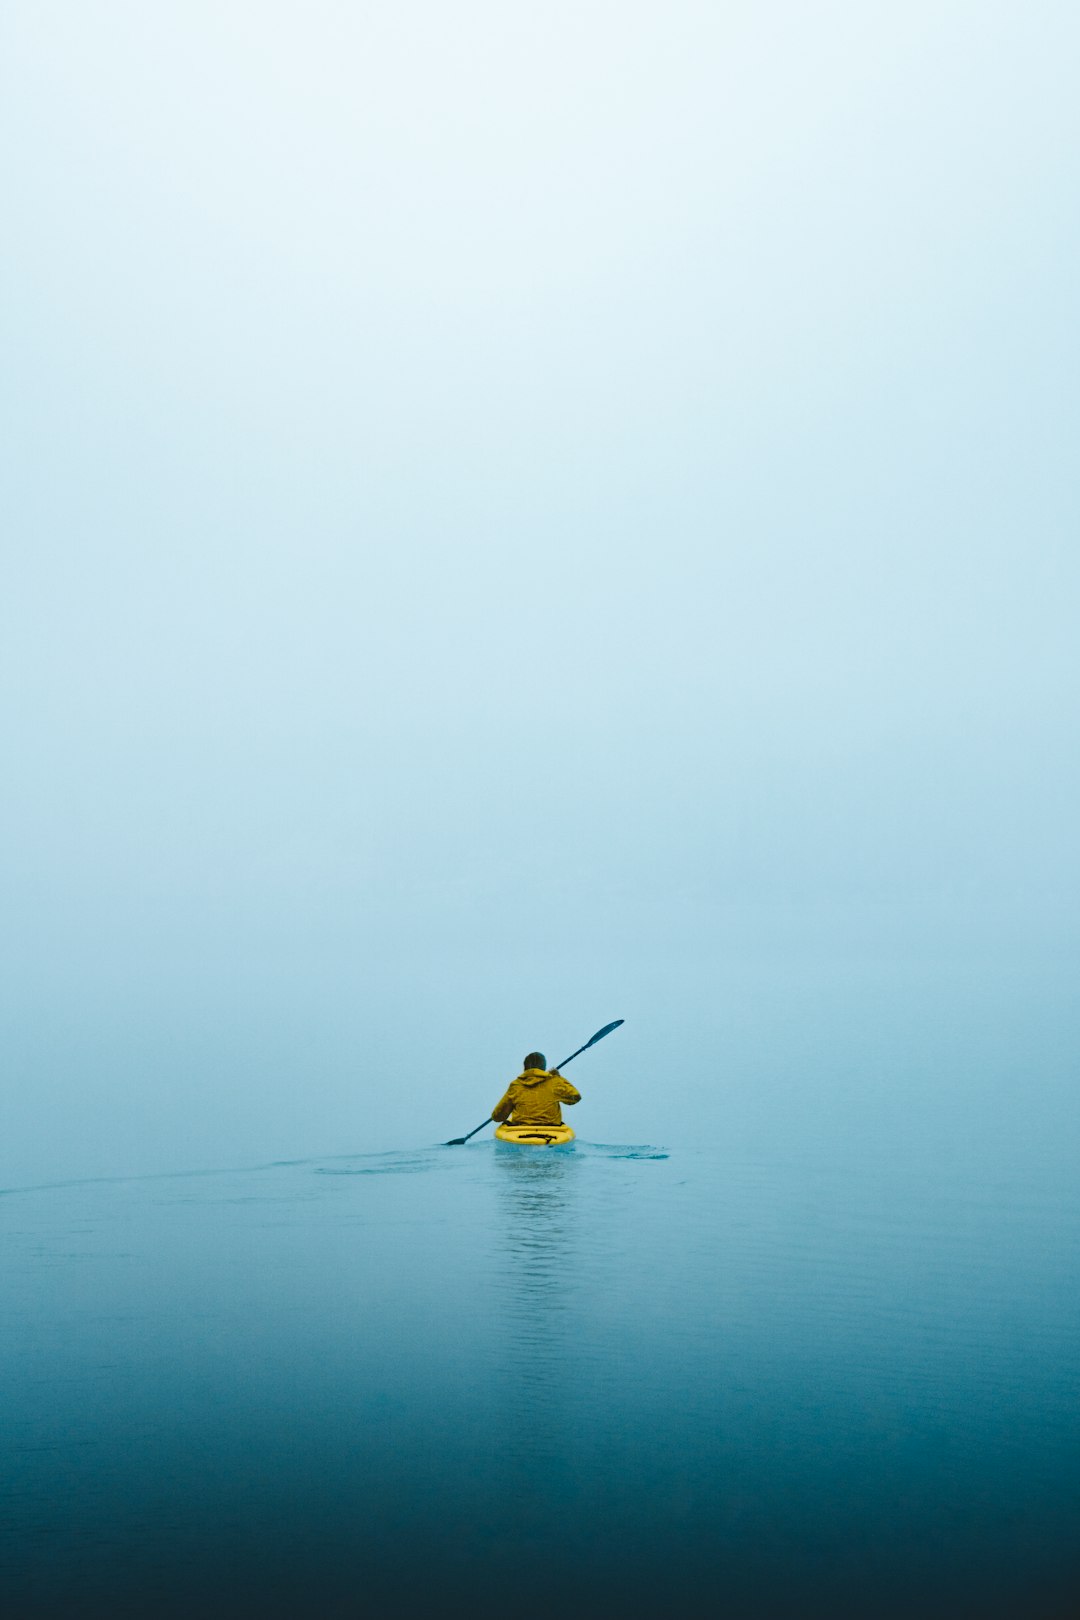 man on kayak during daytime